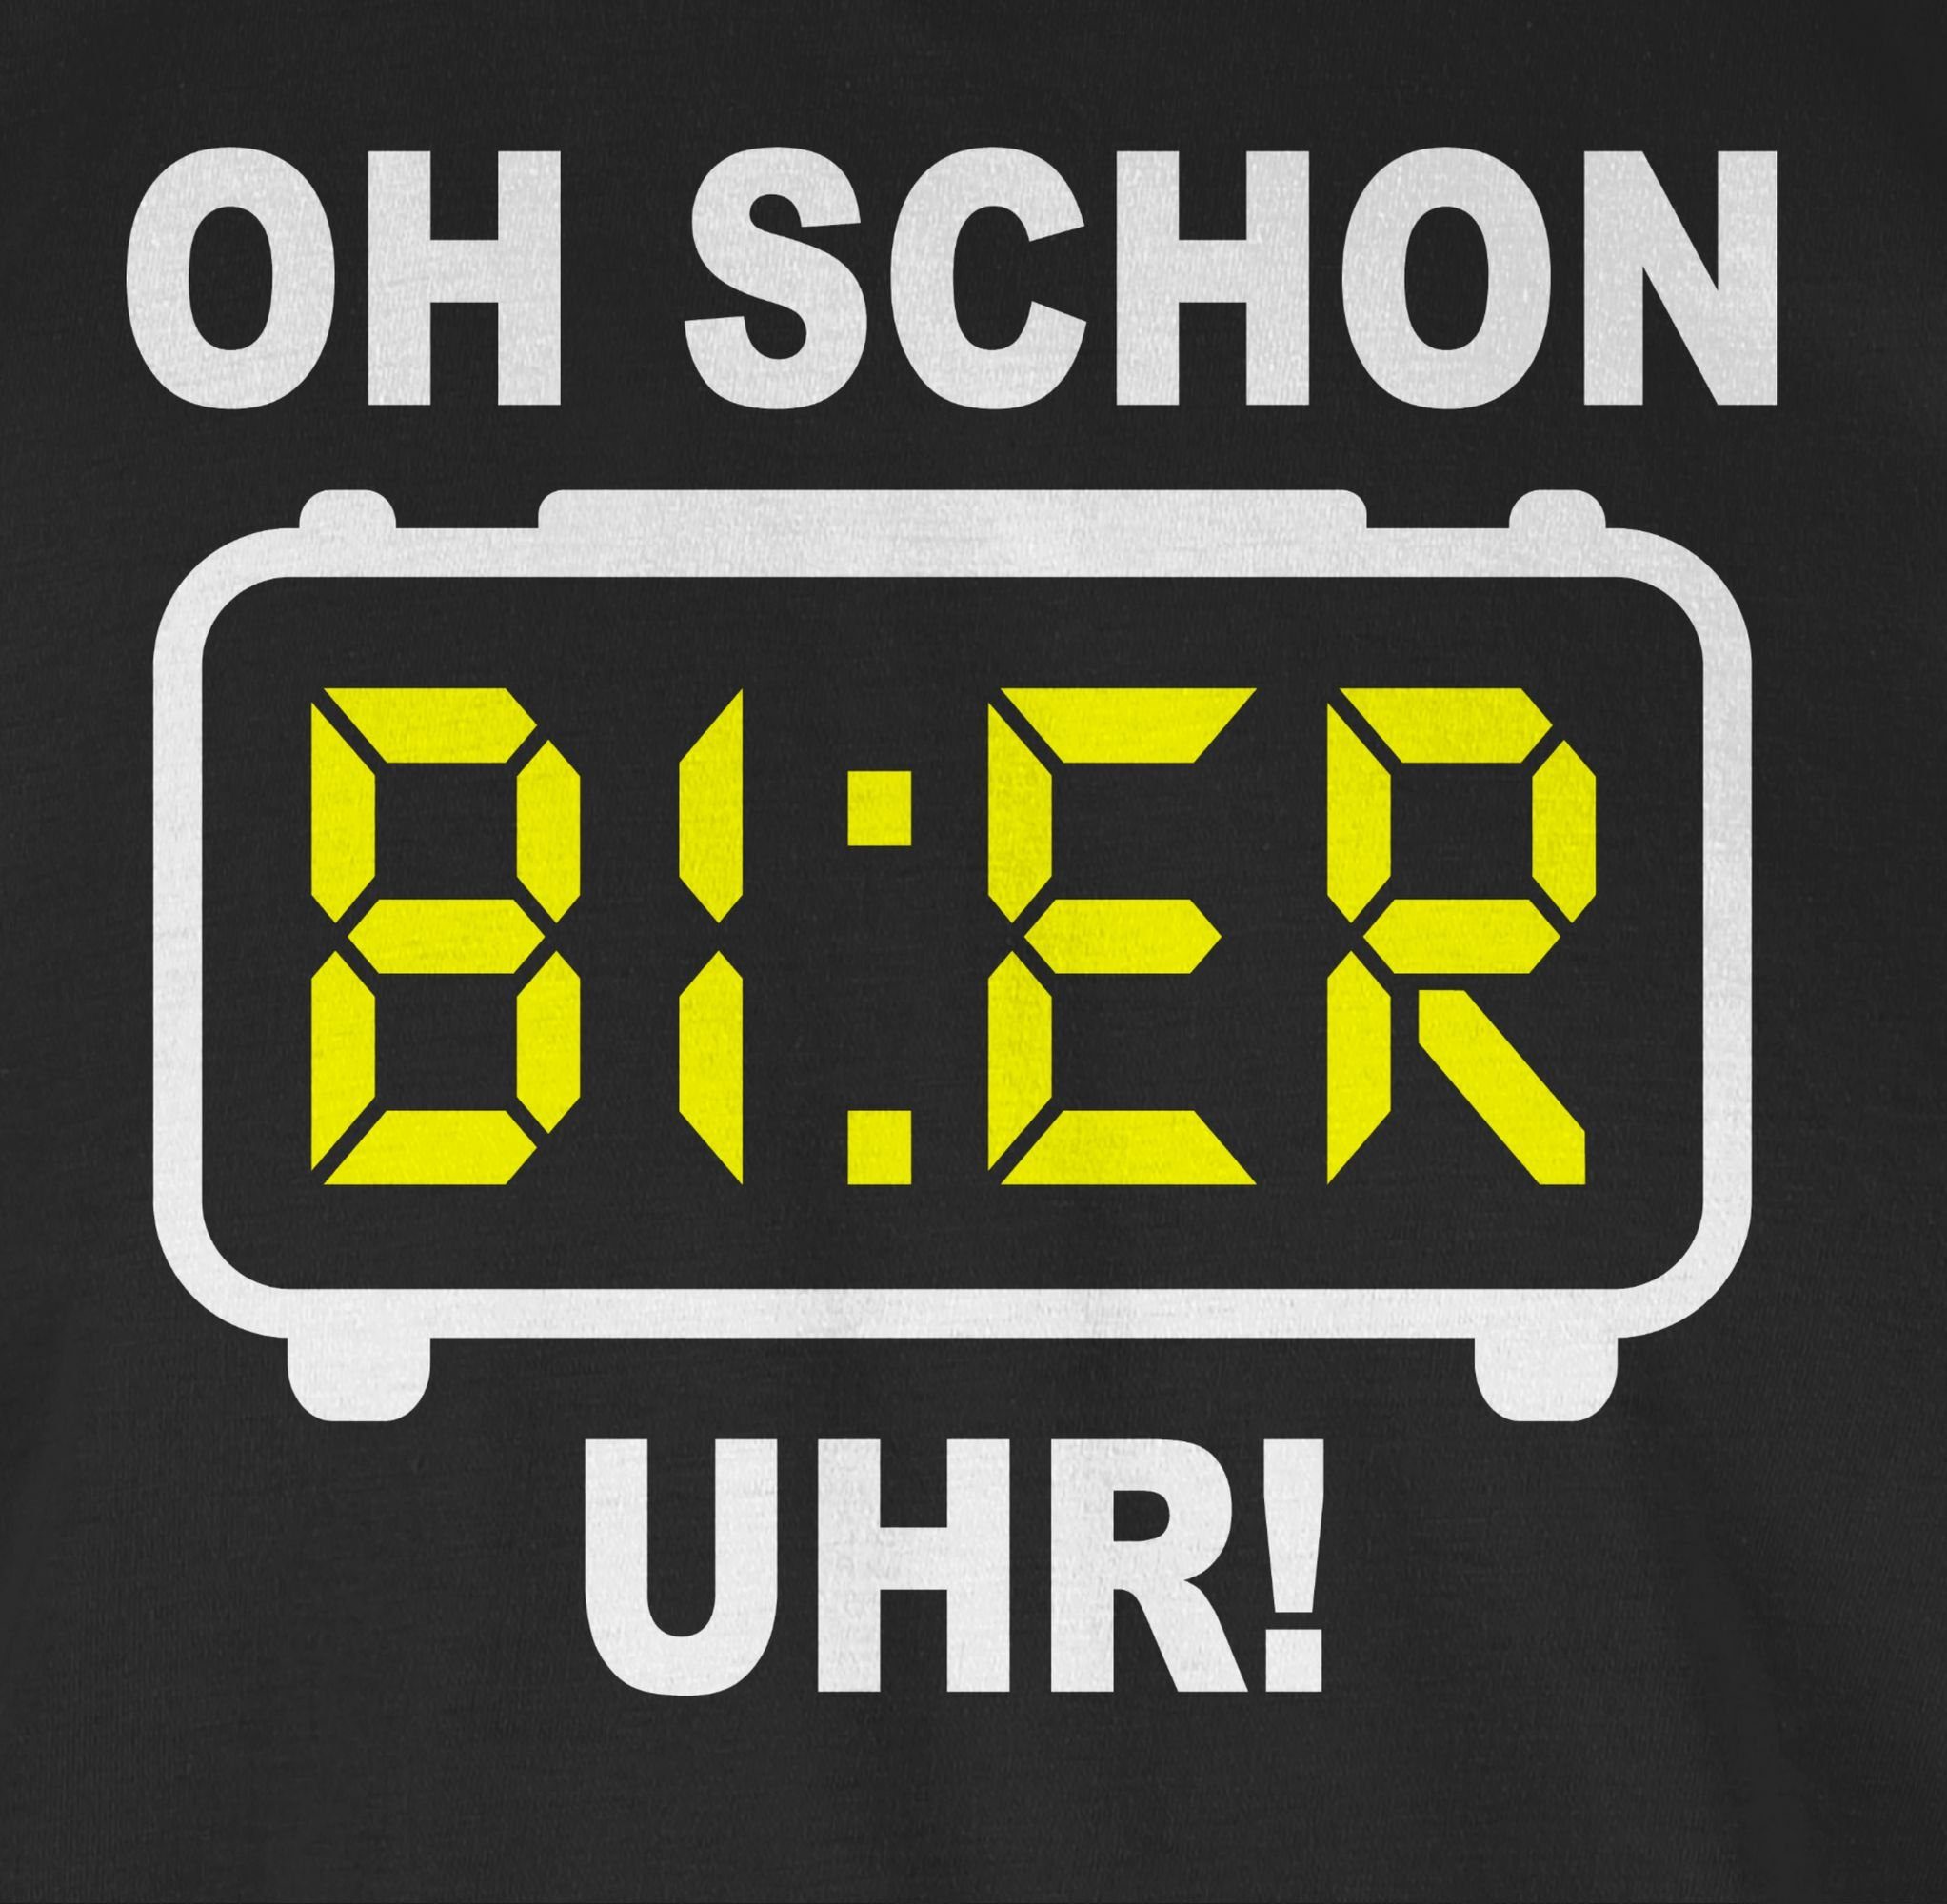 Uhr! & Weiß Herren Schwarz Alkohol Party 01 Bier Shirtracer Oh schon T-Shirt